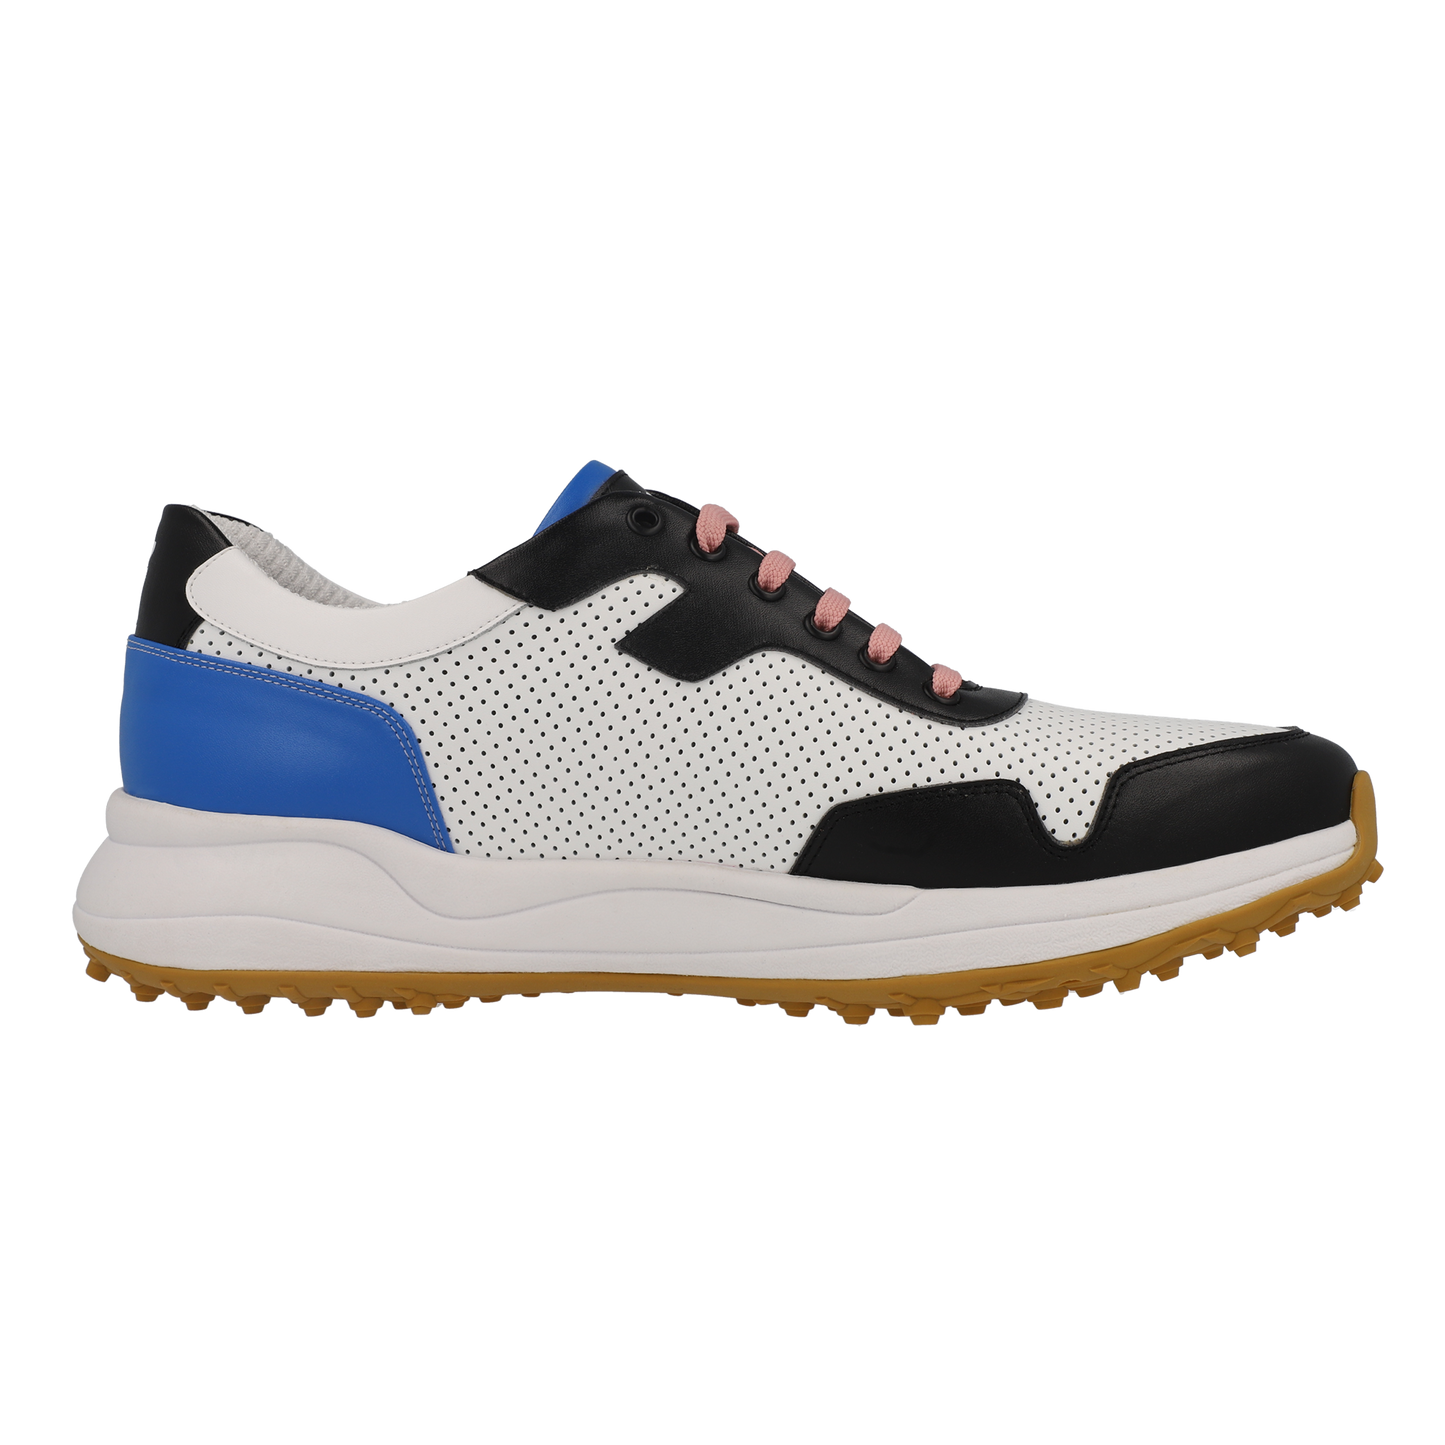 FITTEREST Spider Wave Golf Shoes for Men - FTR23 M SS BL106